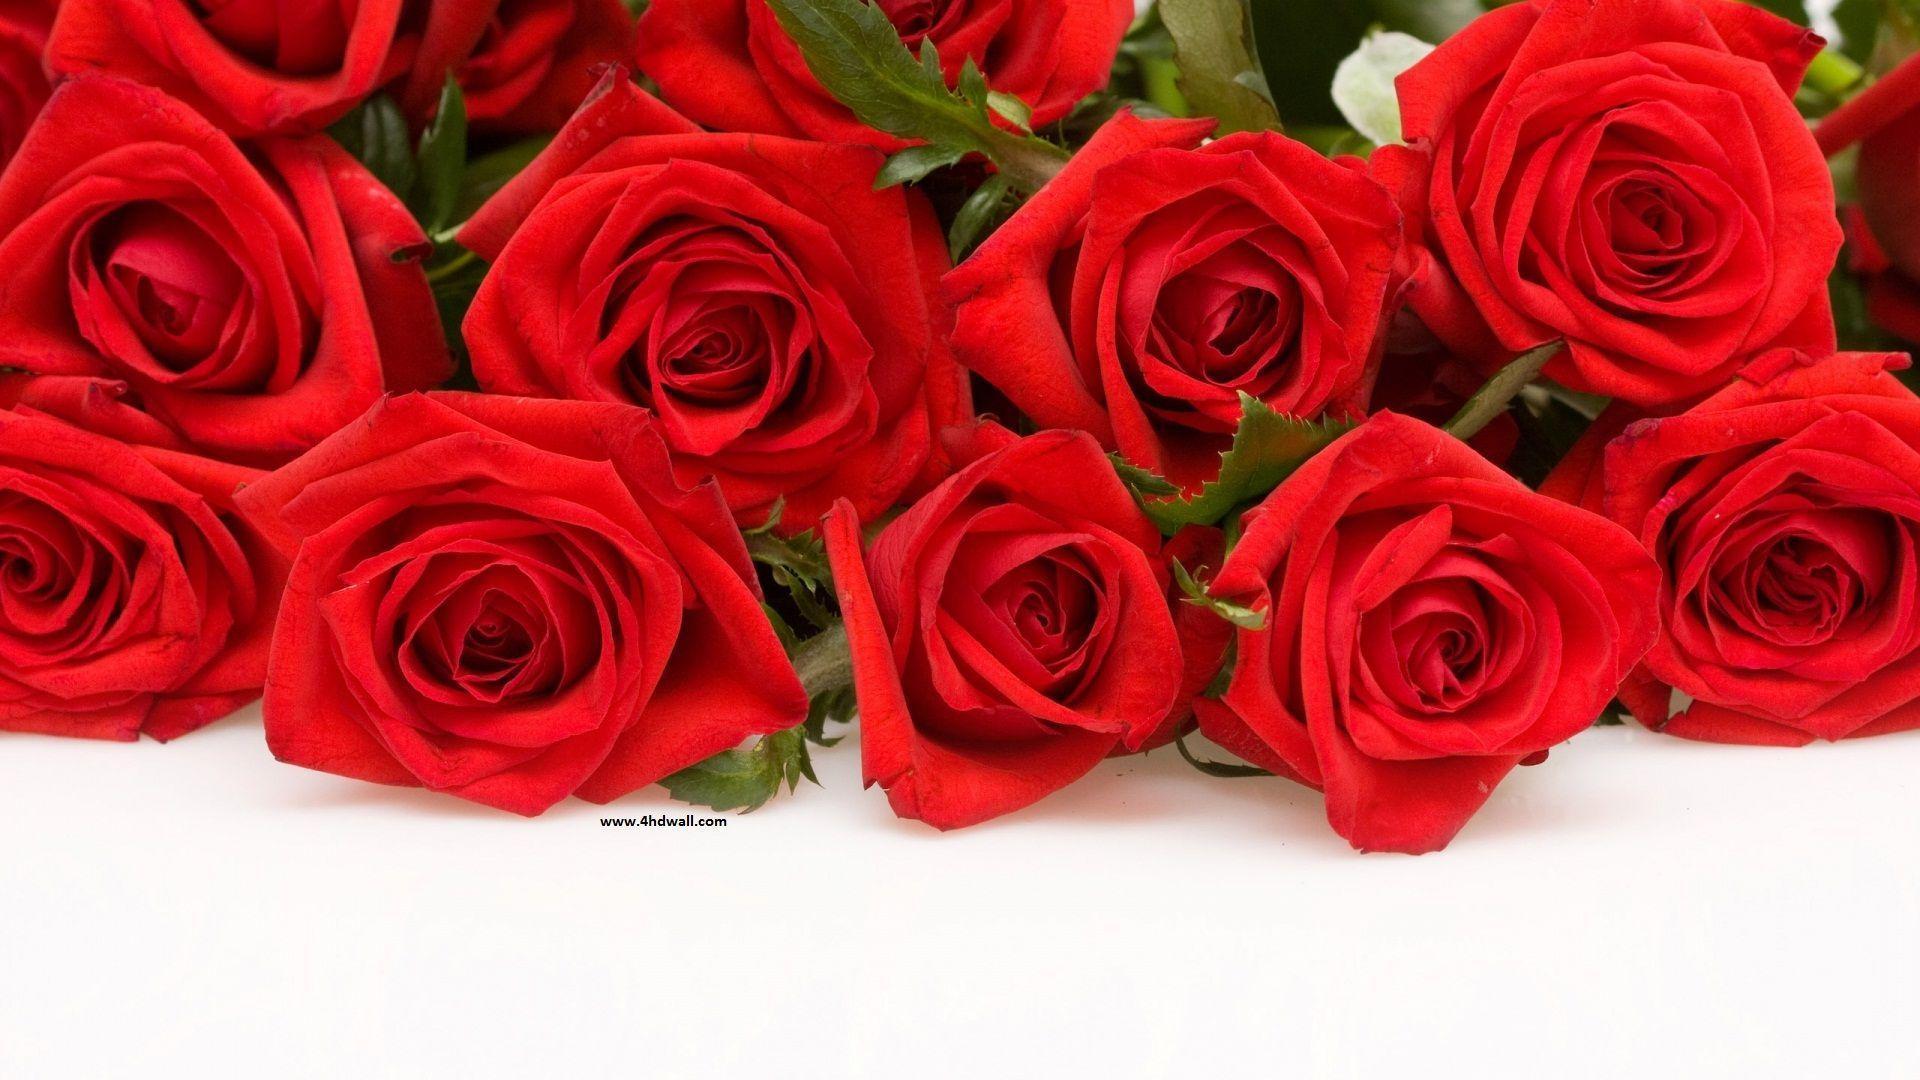 Hình nền hoa hồng - Hình nền hoa hồng là lựa chọn hoàn hảo cho những người yêu thích sự nữ tính và tinh tế. Hình ảnh về những cánh hoa hồng trắng tinh khôi hay màu hồng thật tuyệt đẹp và ấn tượng. Hãy xem hình nền hoa hồng để cảm nhận sự thư thái và sự tươi mới mà chúng mang đến.